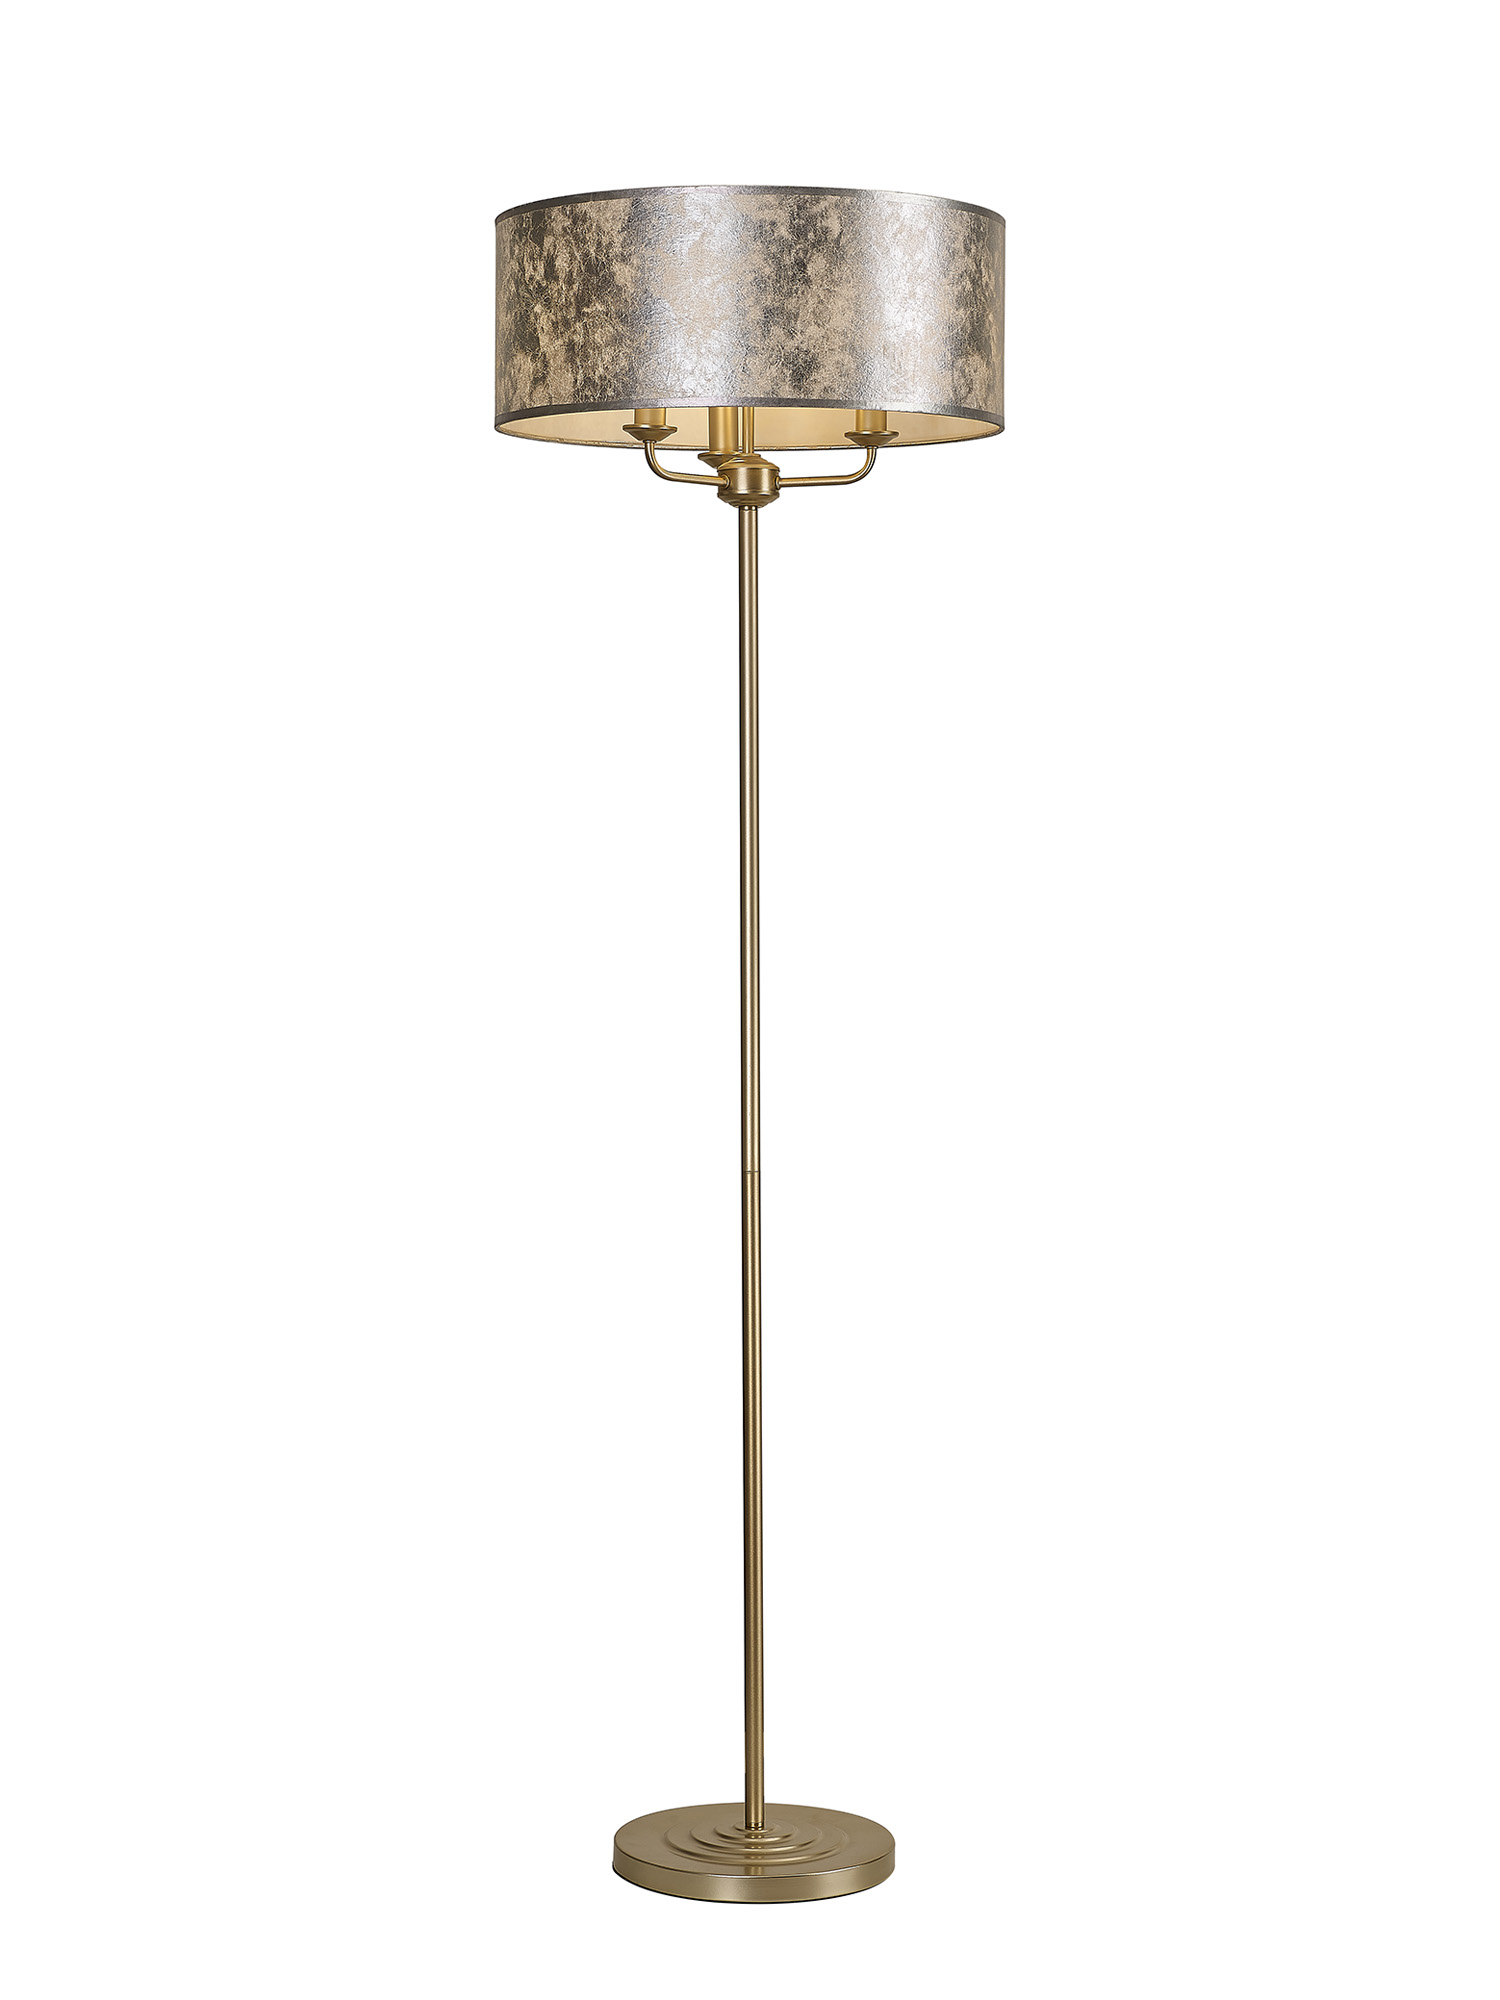 DK1006  Banyan 45cm 3 Light Floor Lamp Champagne Gold, Silver Leaf